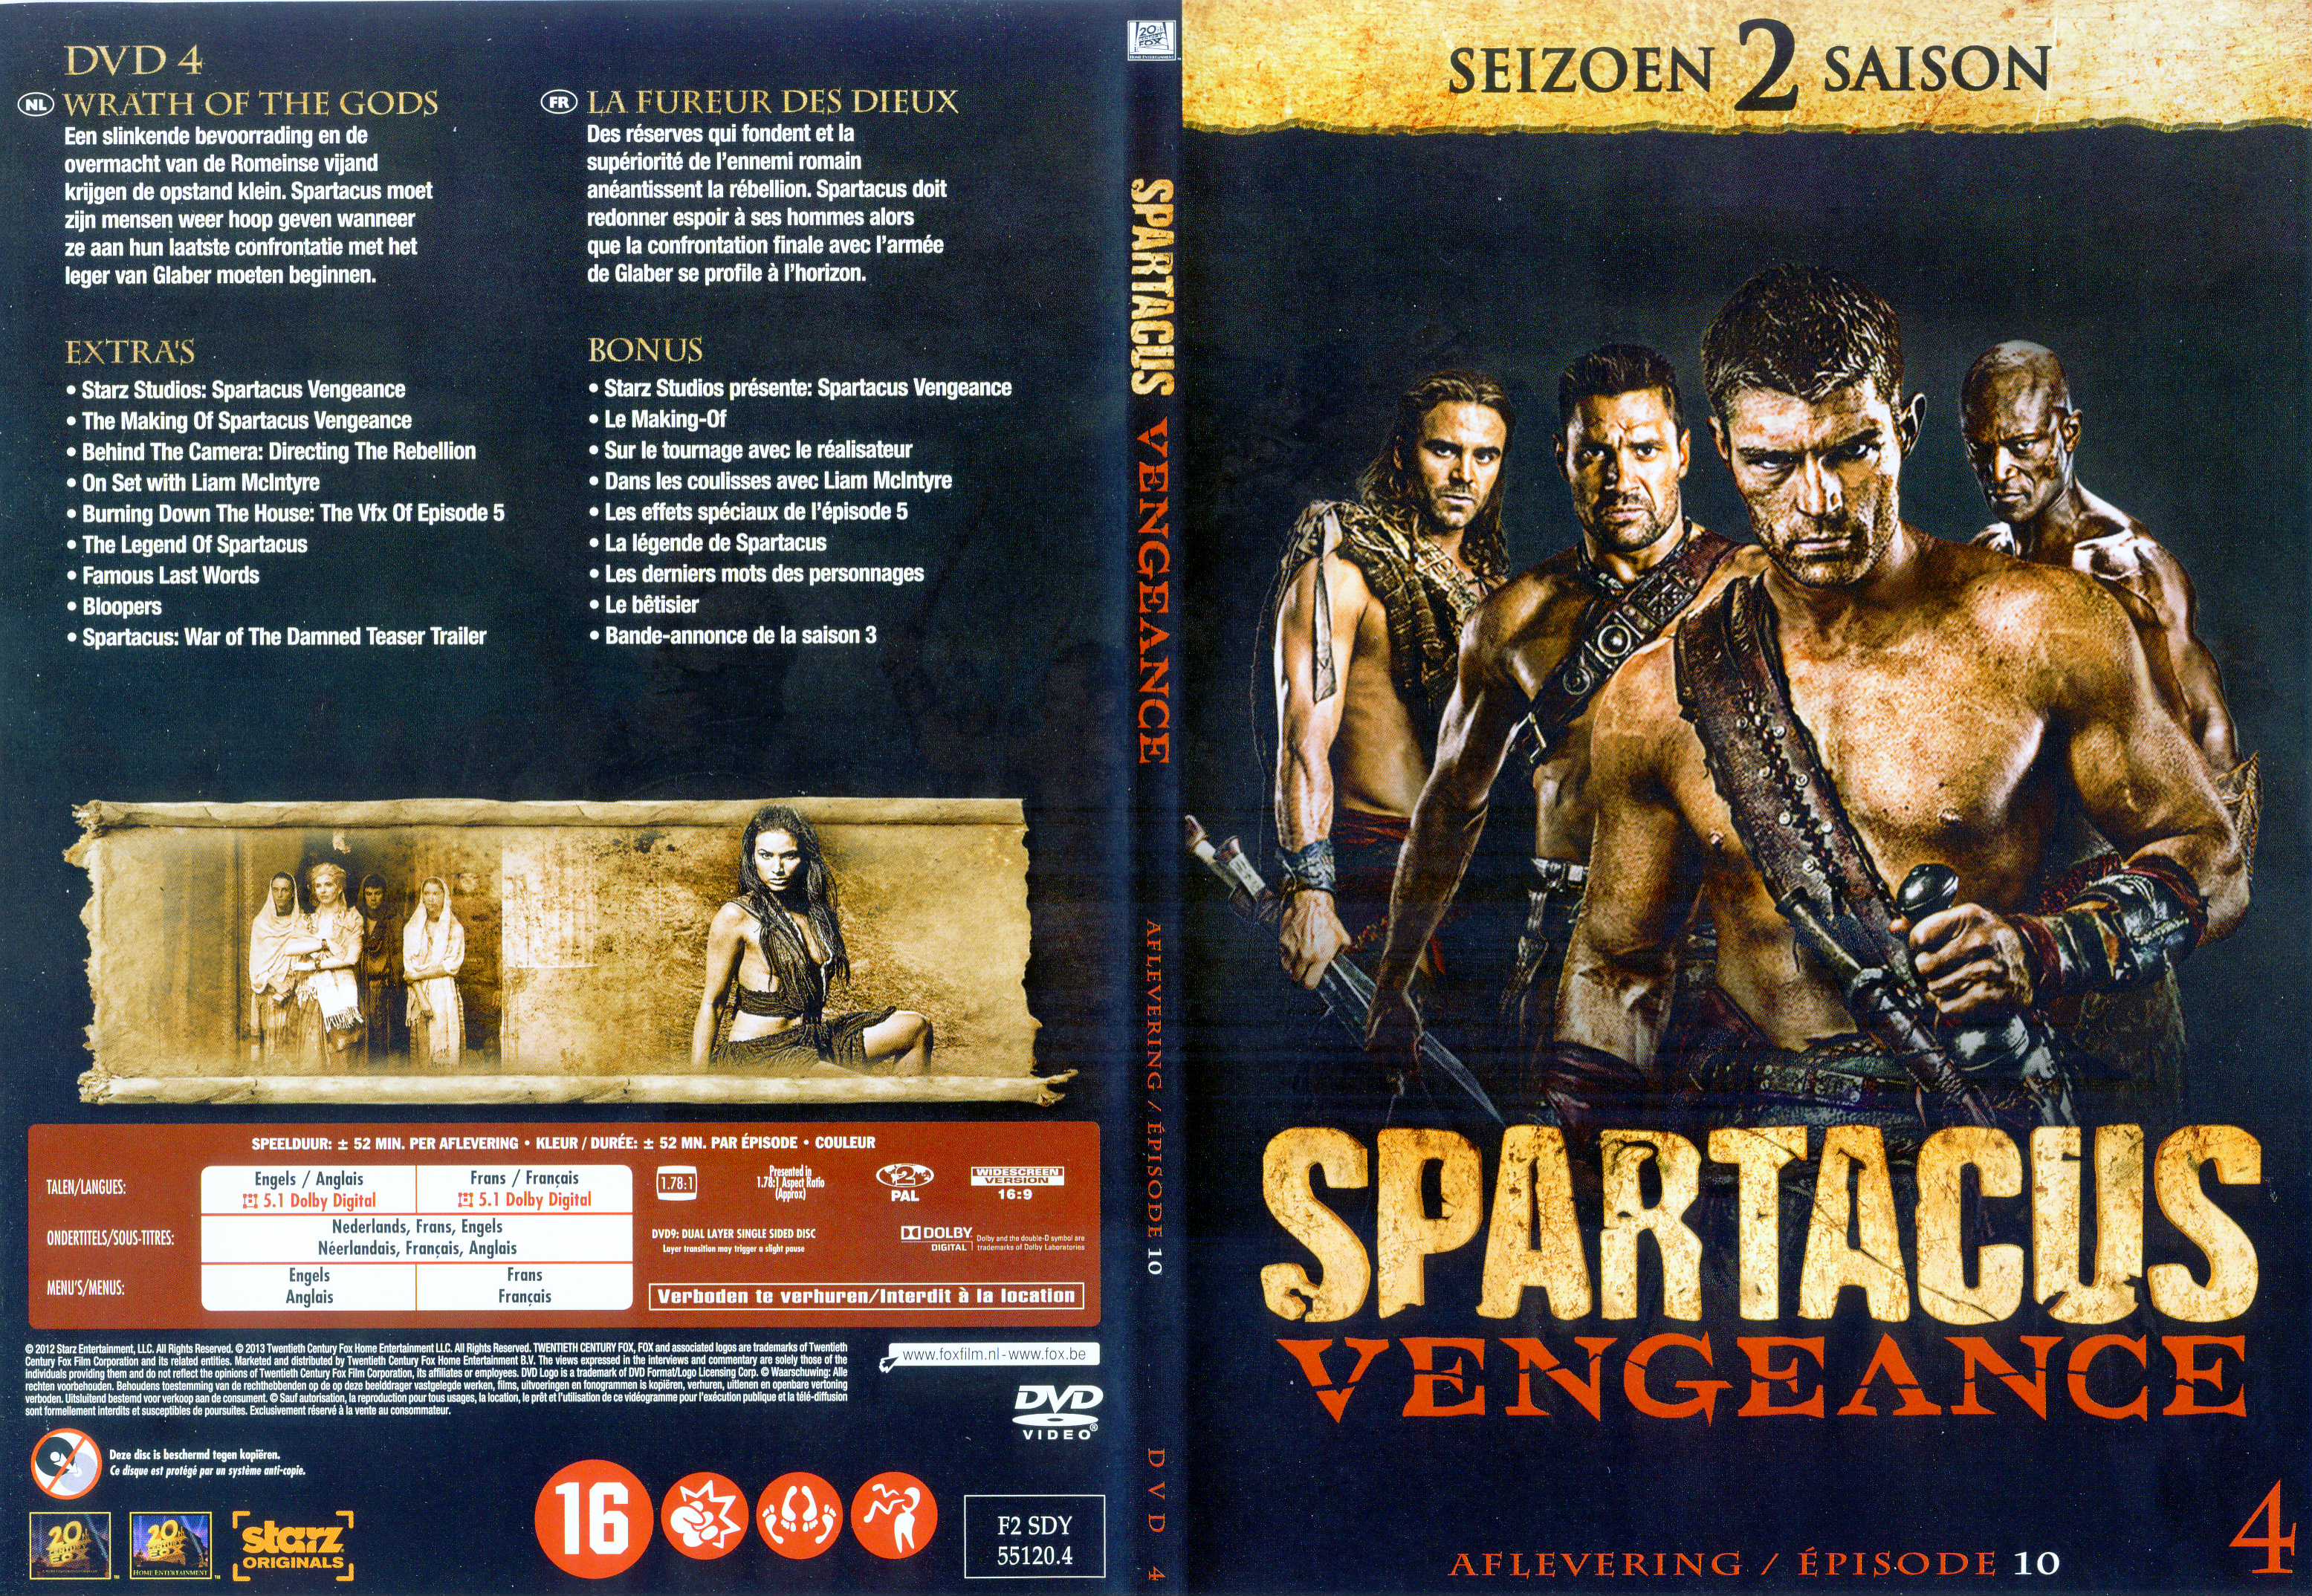 Jaquette DVD Spartacus vengeance Saison 2 DVD 4